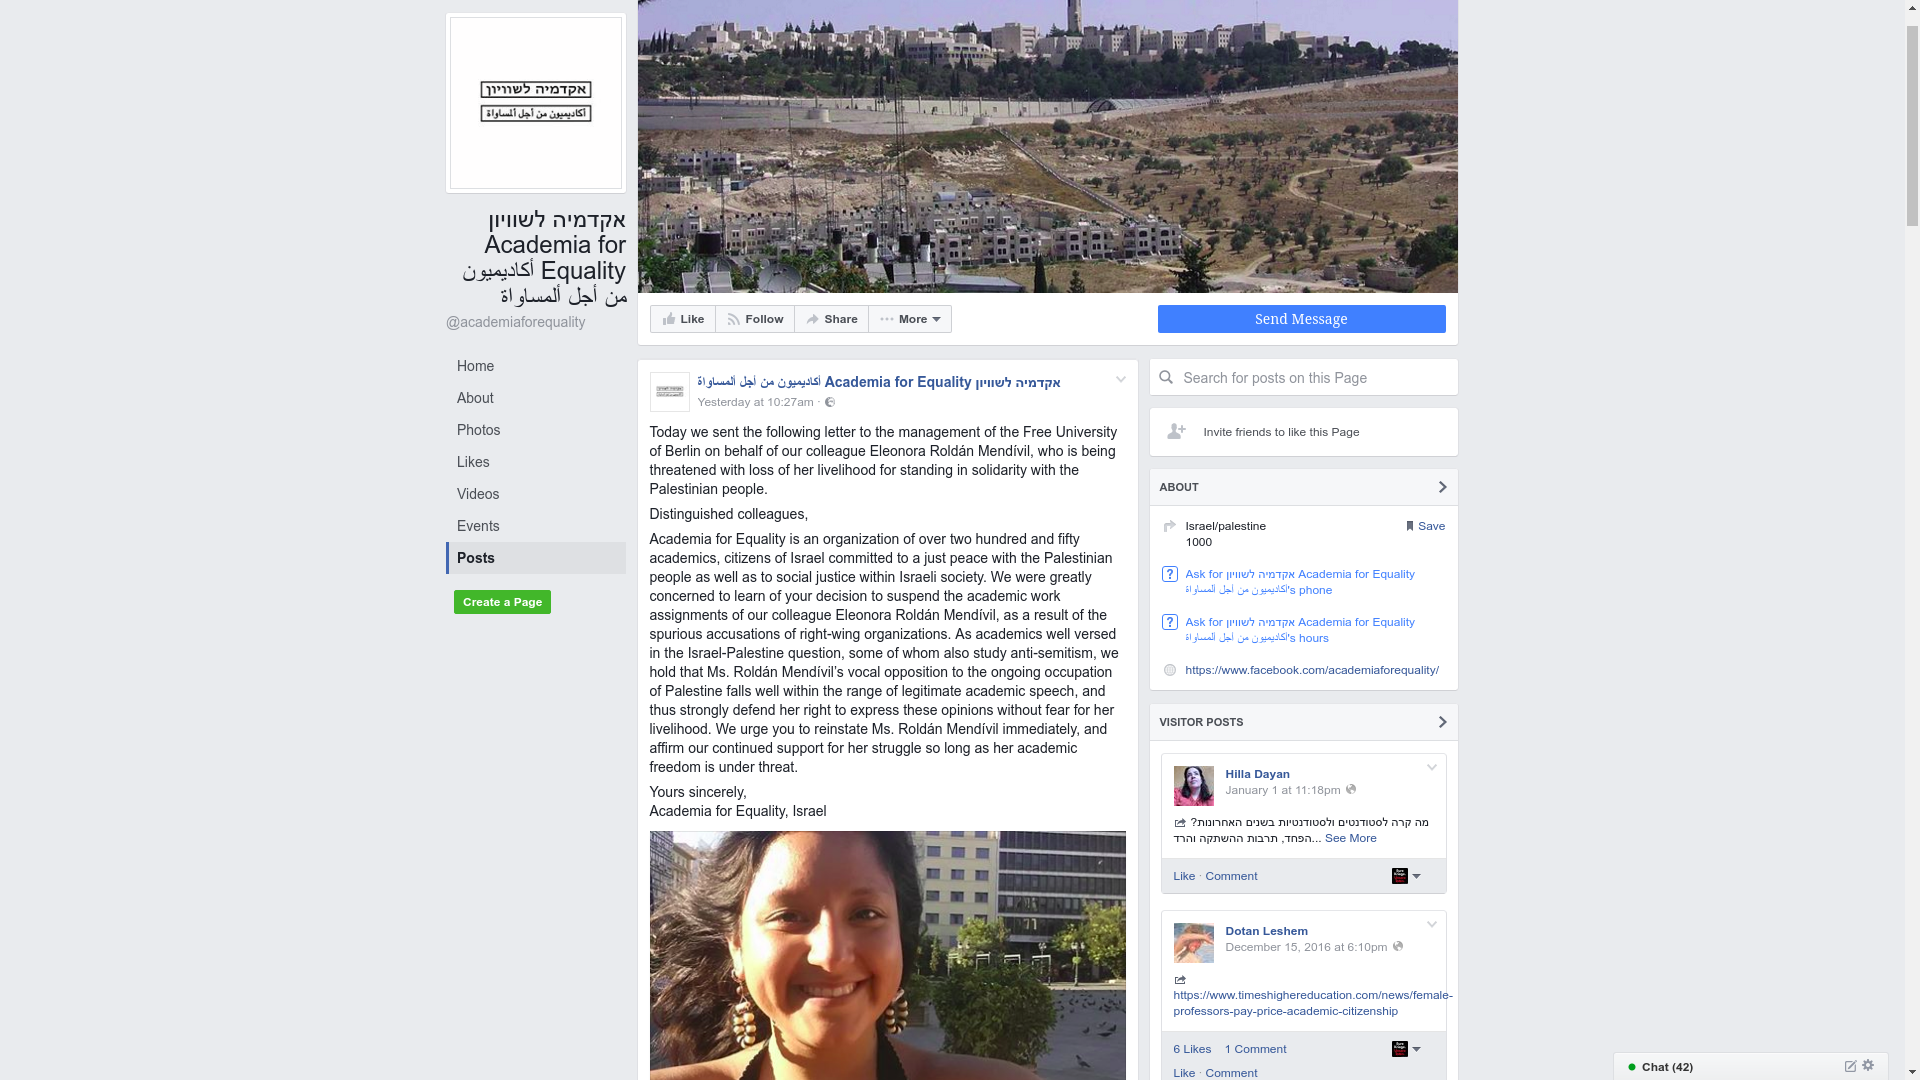 Über 250 israelische Wissenschaftler*innen protestieren gegen Suspendierung von Eleonora